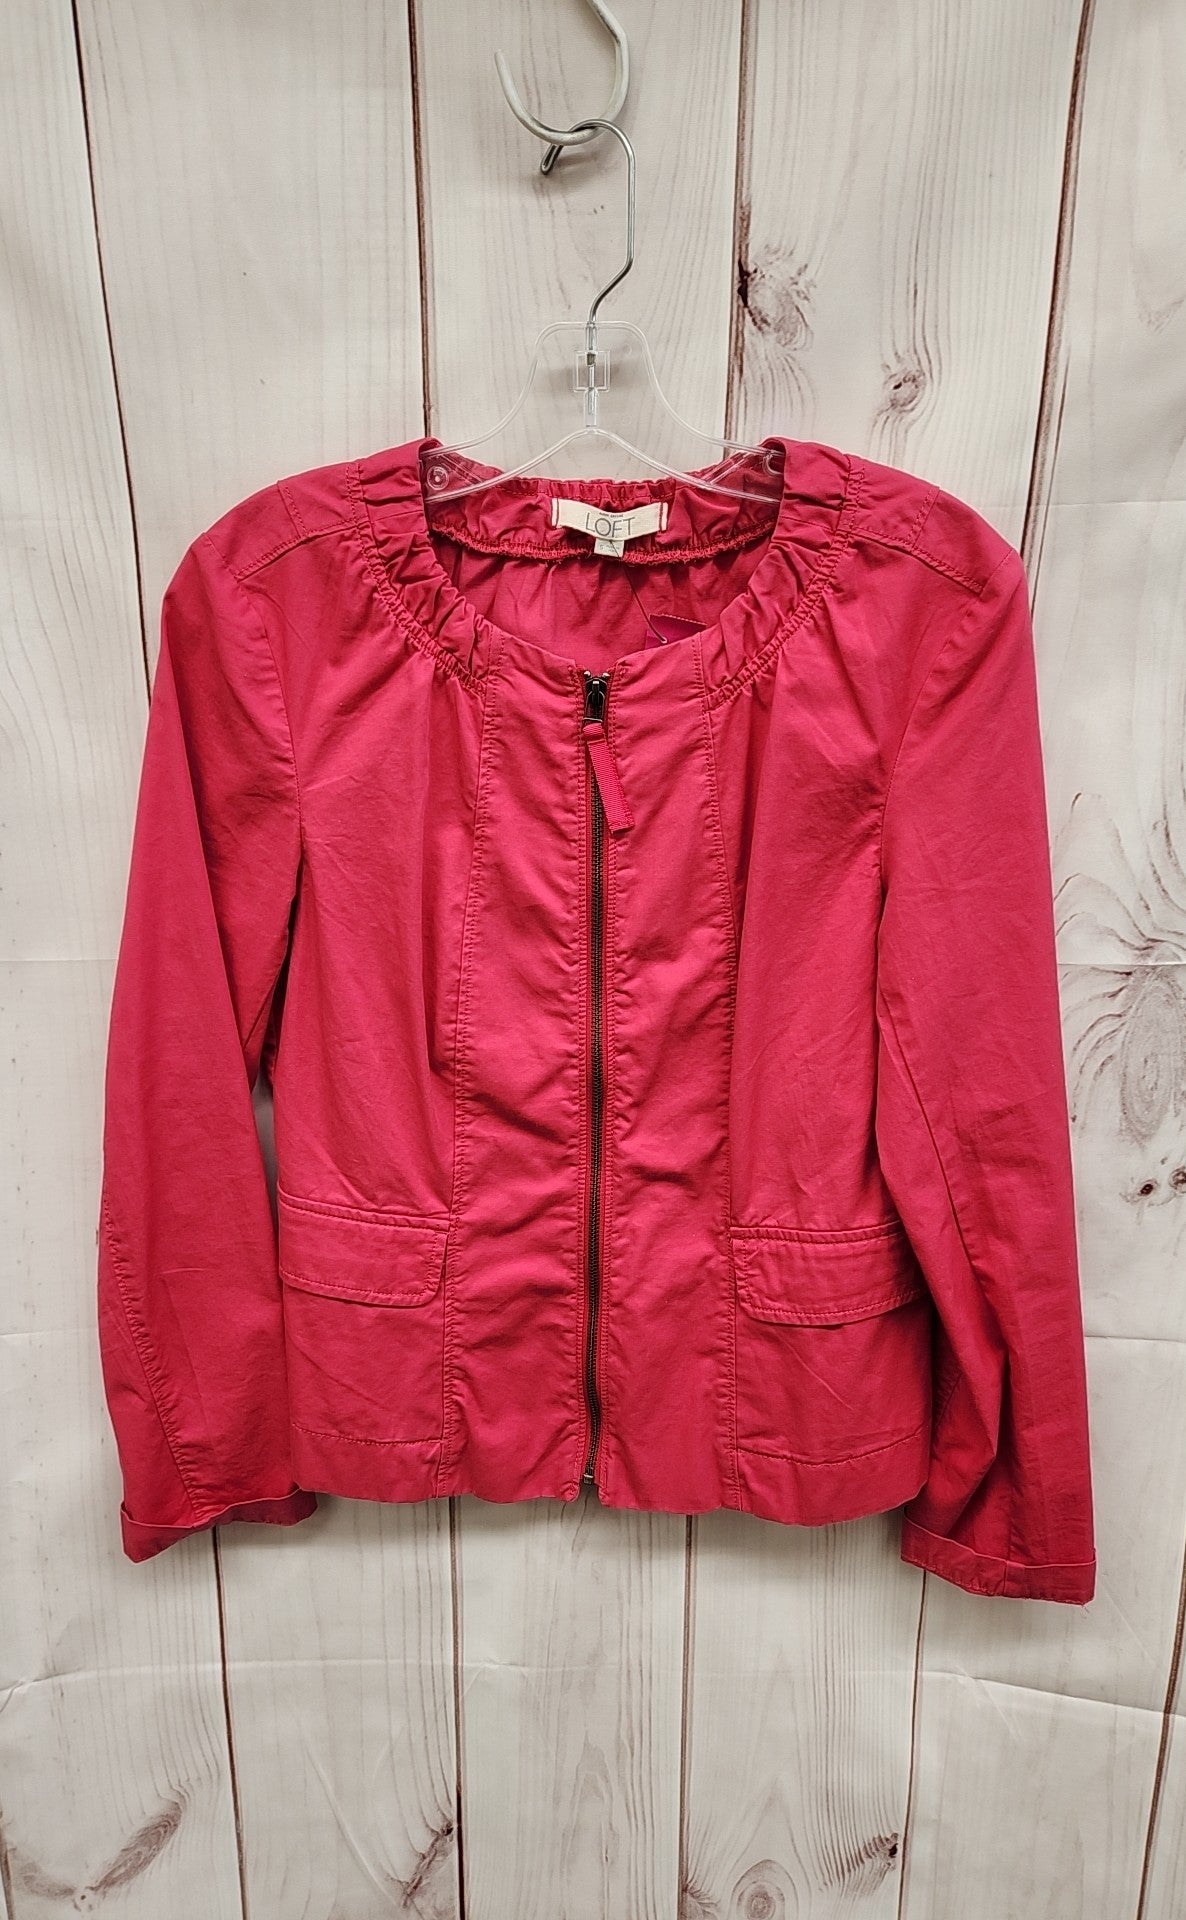 Loft Women's Size S Pink Jacket